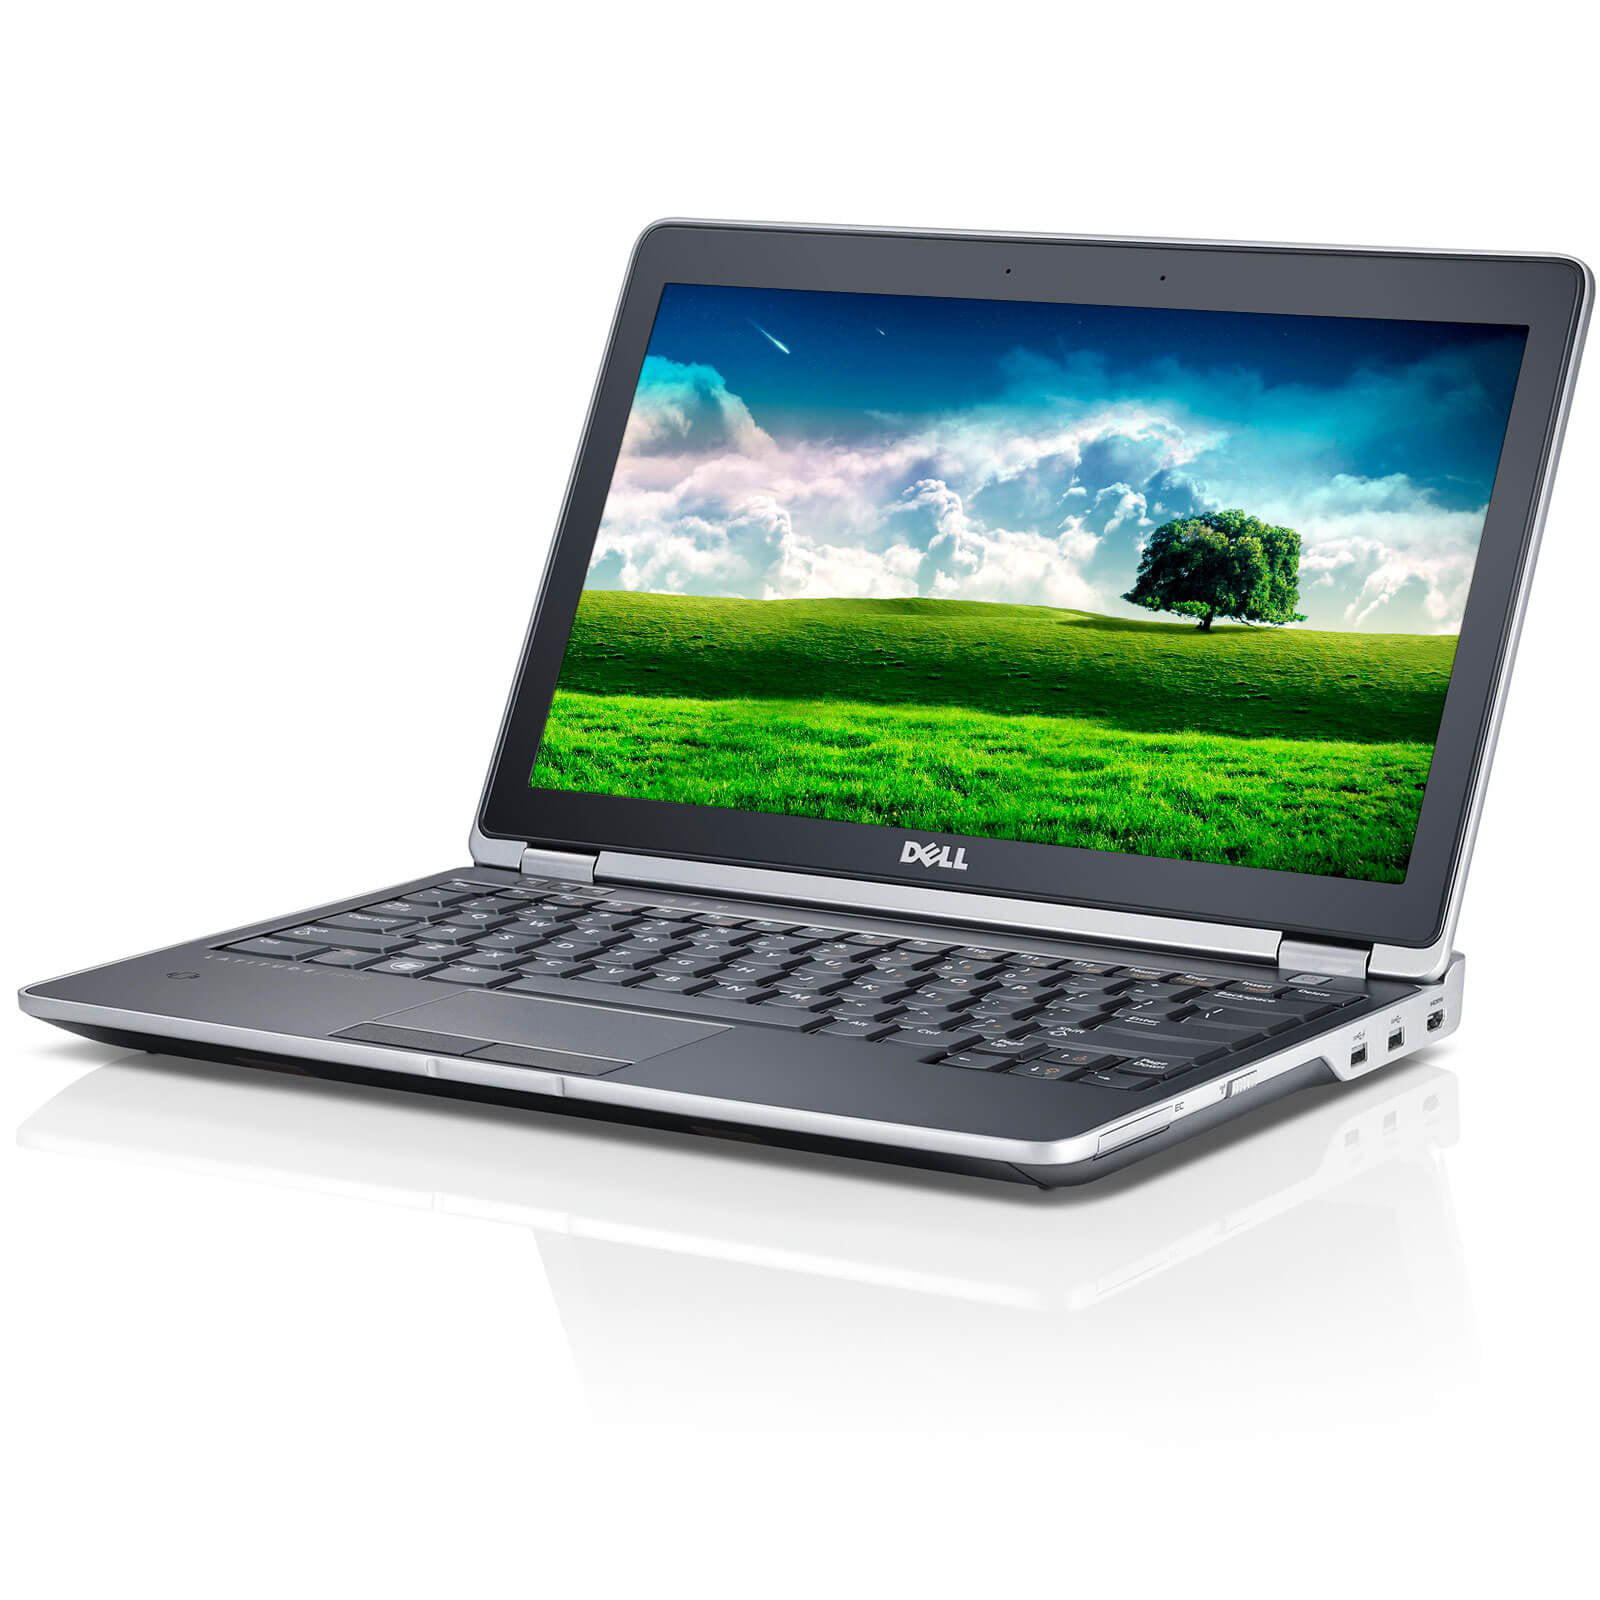 Dell Latitude E6230 Laptop Computer, 3.00 GHz Intel i7 Dual Core Gen 3